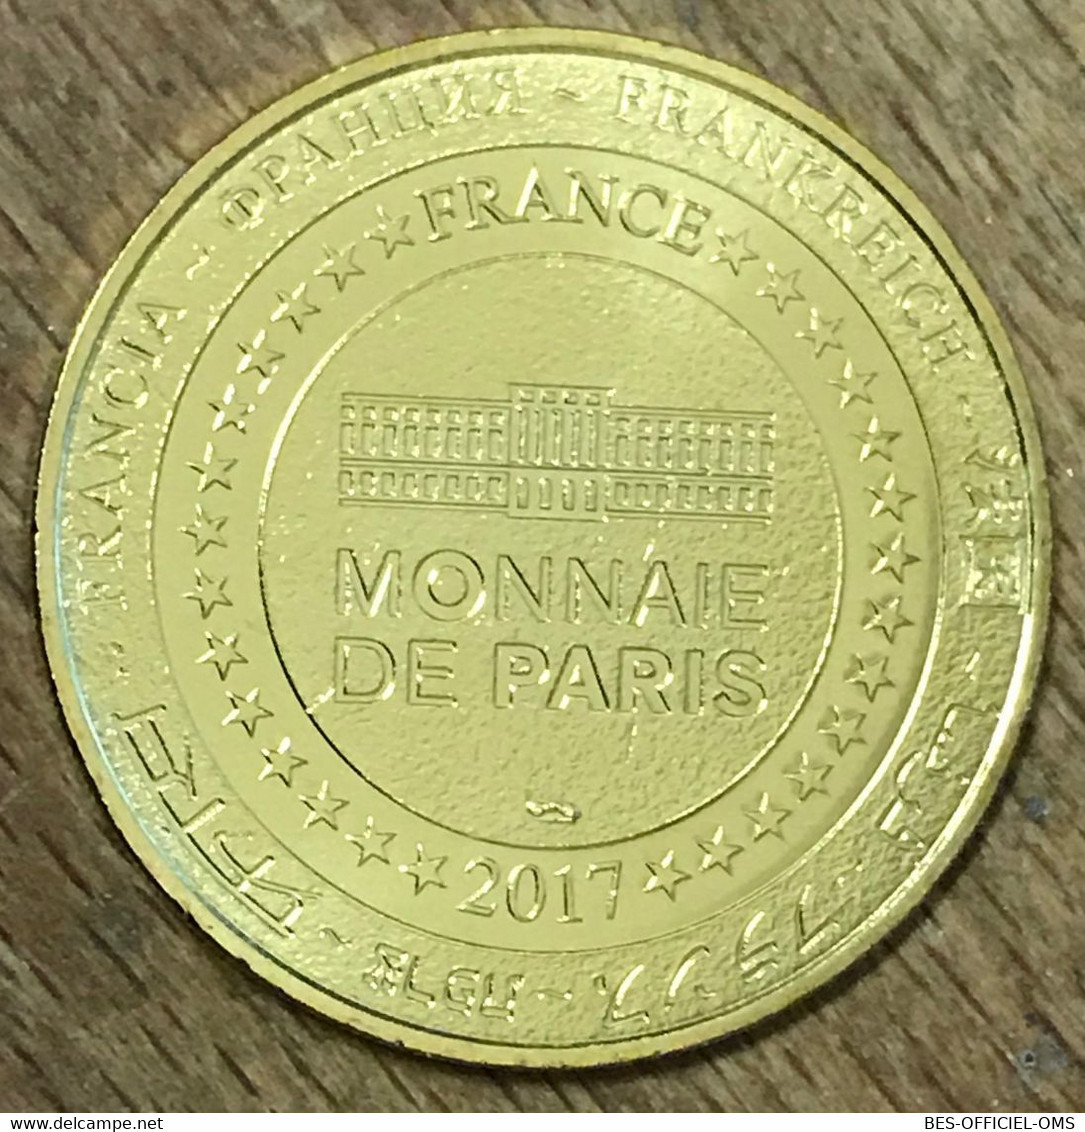 55 CITADELLE DE MONTMÉDY MEUSE MDP 2017 MÉDAILLE SOUVENIR MONNAIE DE PARIS JETON TOURISTIQUE MEDALS COINS TOKENS - 2017